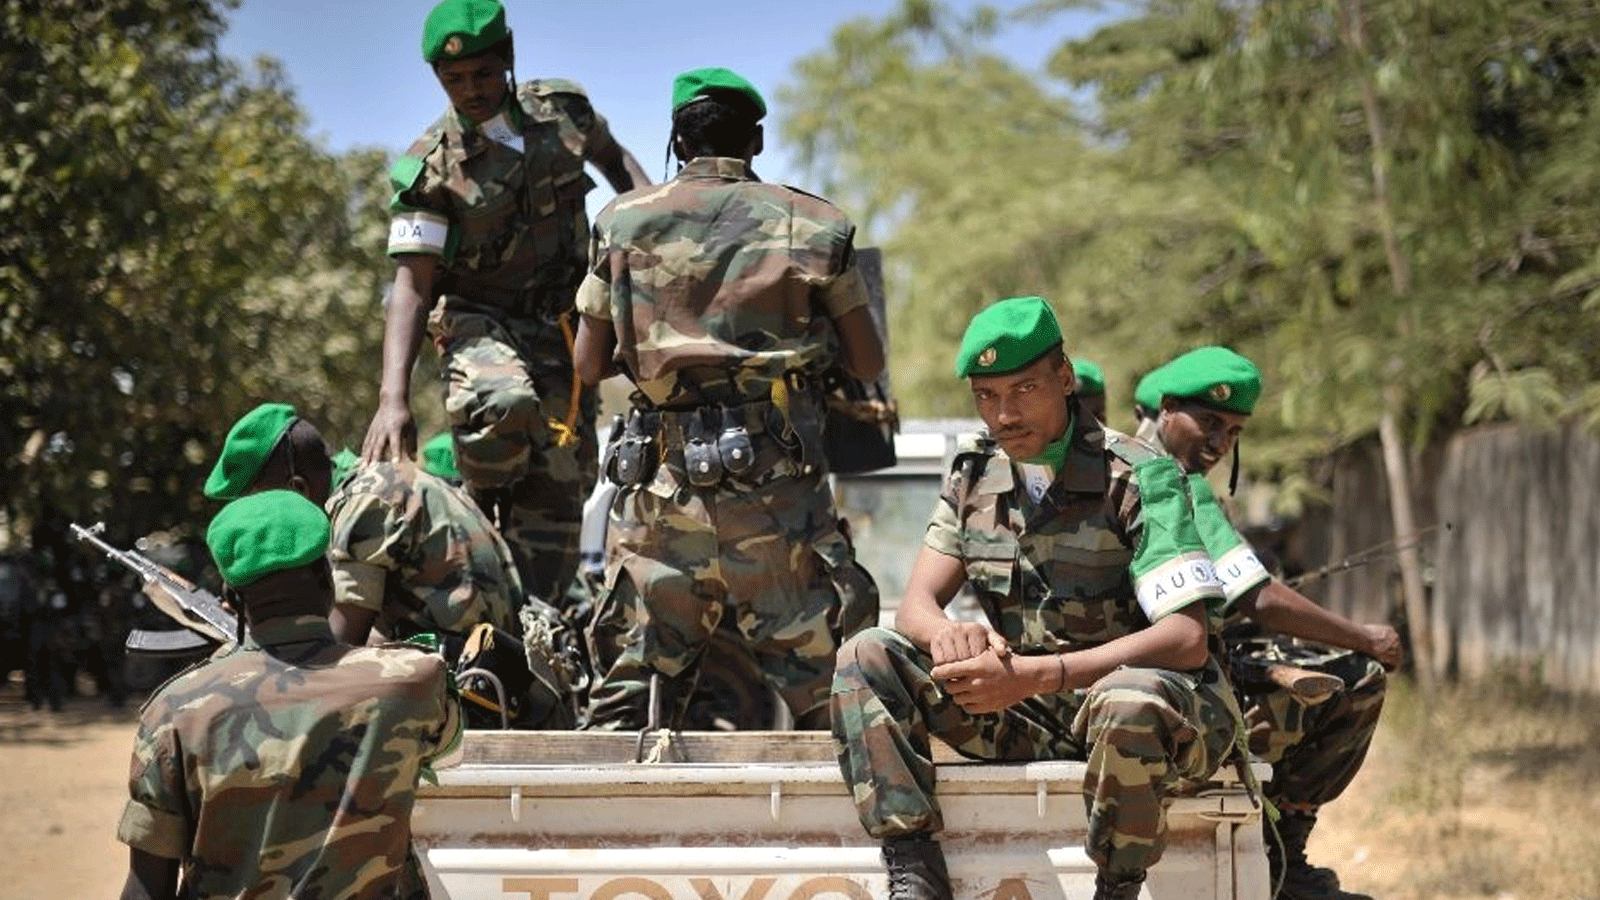 صورة نشرها فريق الدعم الإعلامي للاتحاد الأفريقي والأمم المتحدة، لجنود إثيوبيين يستعدون للمغادرة بعد احتفال أقيم في بيدوا بالصومال